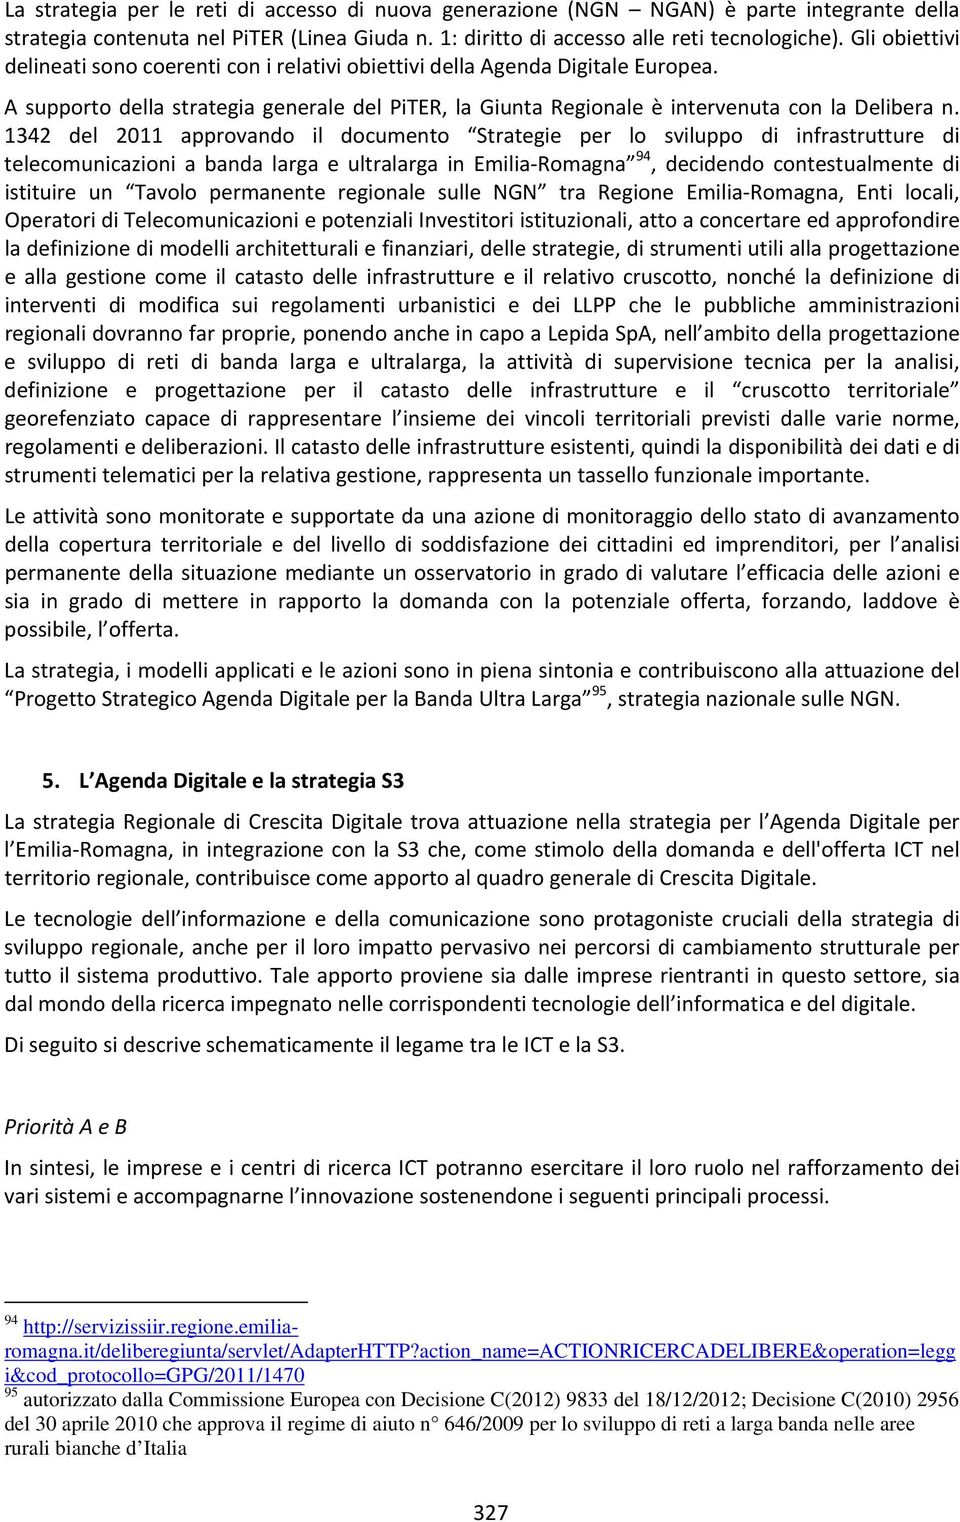 1342 del 2011 approvando il documento Strategie per lo sviluppo di infrastrutture di telecomunicazioni a banda larga e ultralarga in Emilia Romagna 94, decidendo contestualmente di istituire un